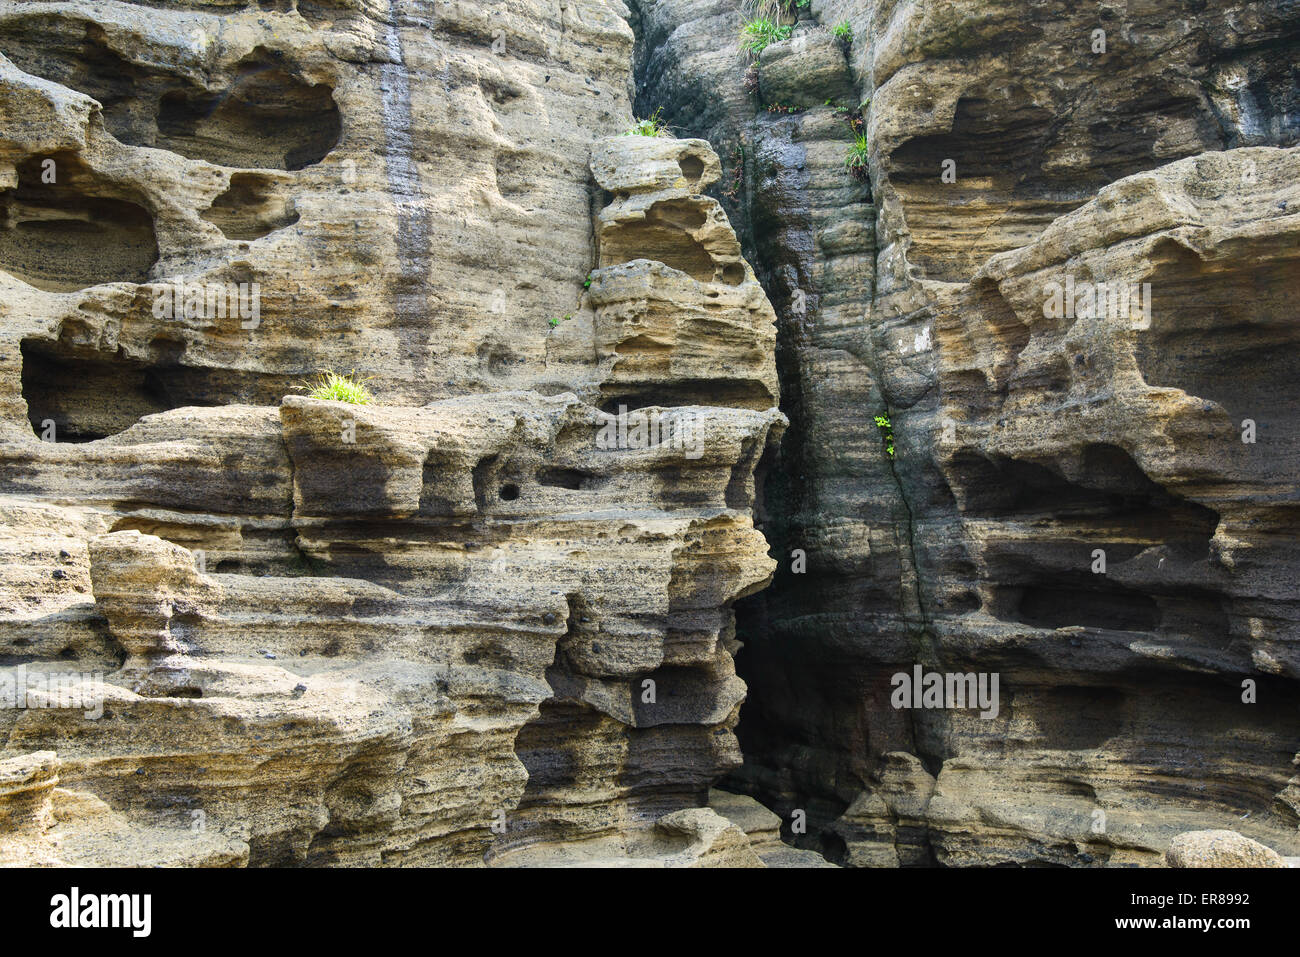 Stratificato di multistory ruvido e strane rocce sedimentarie nella famosa località turistica della costa Yongmeori(testa di drago costa) nell'Isola di Jeju. Foto Stock